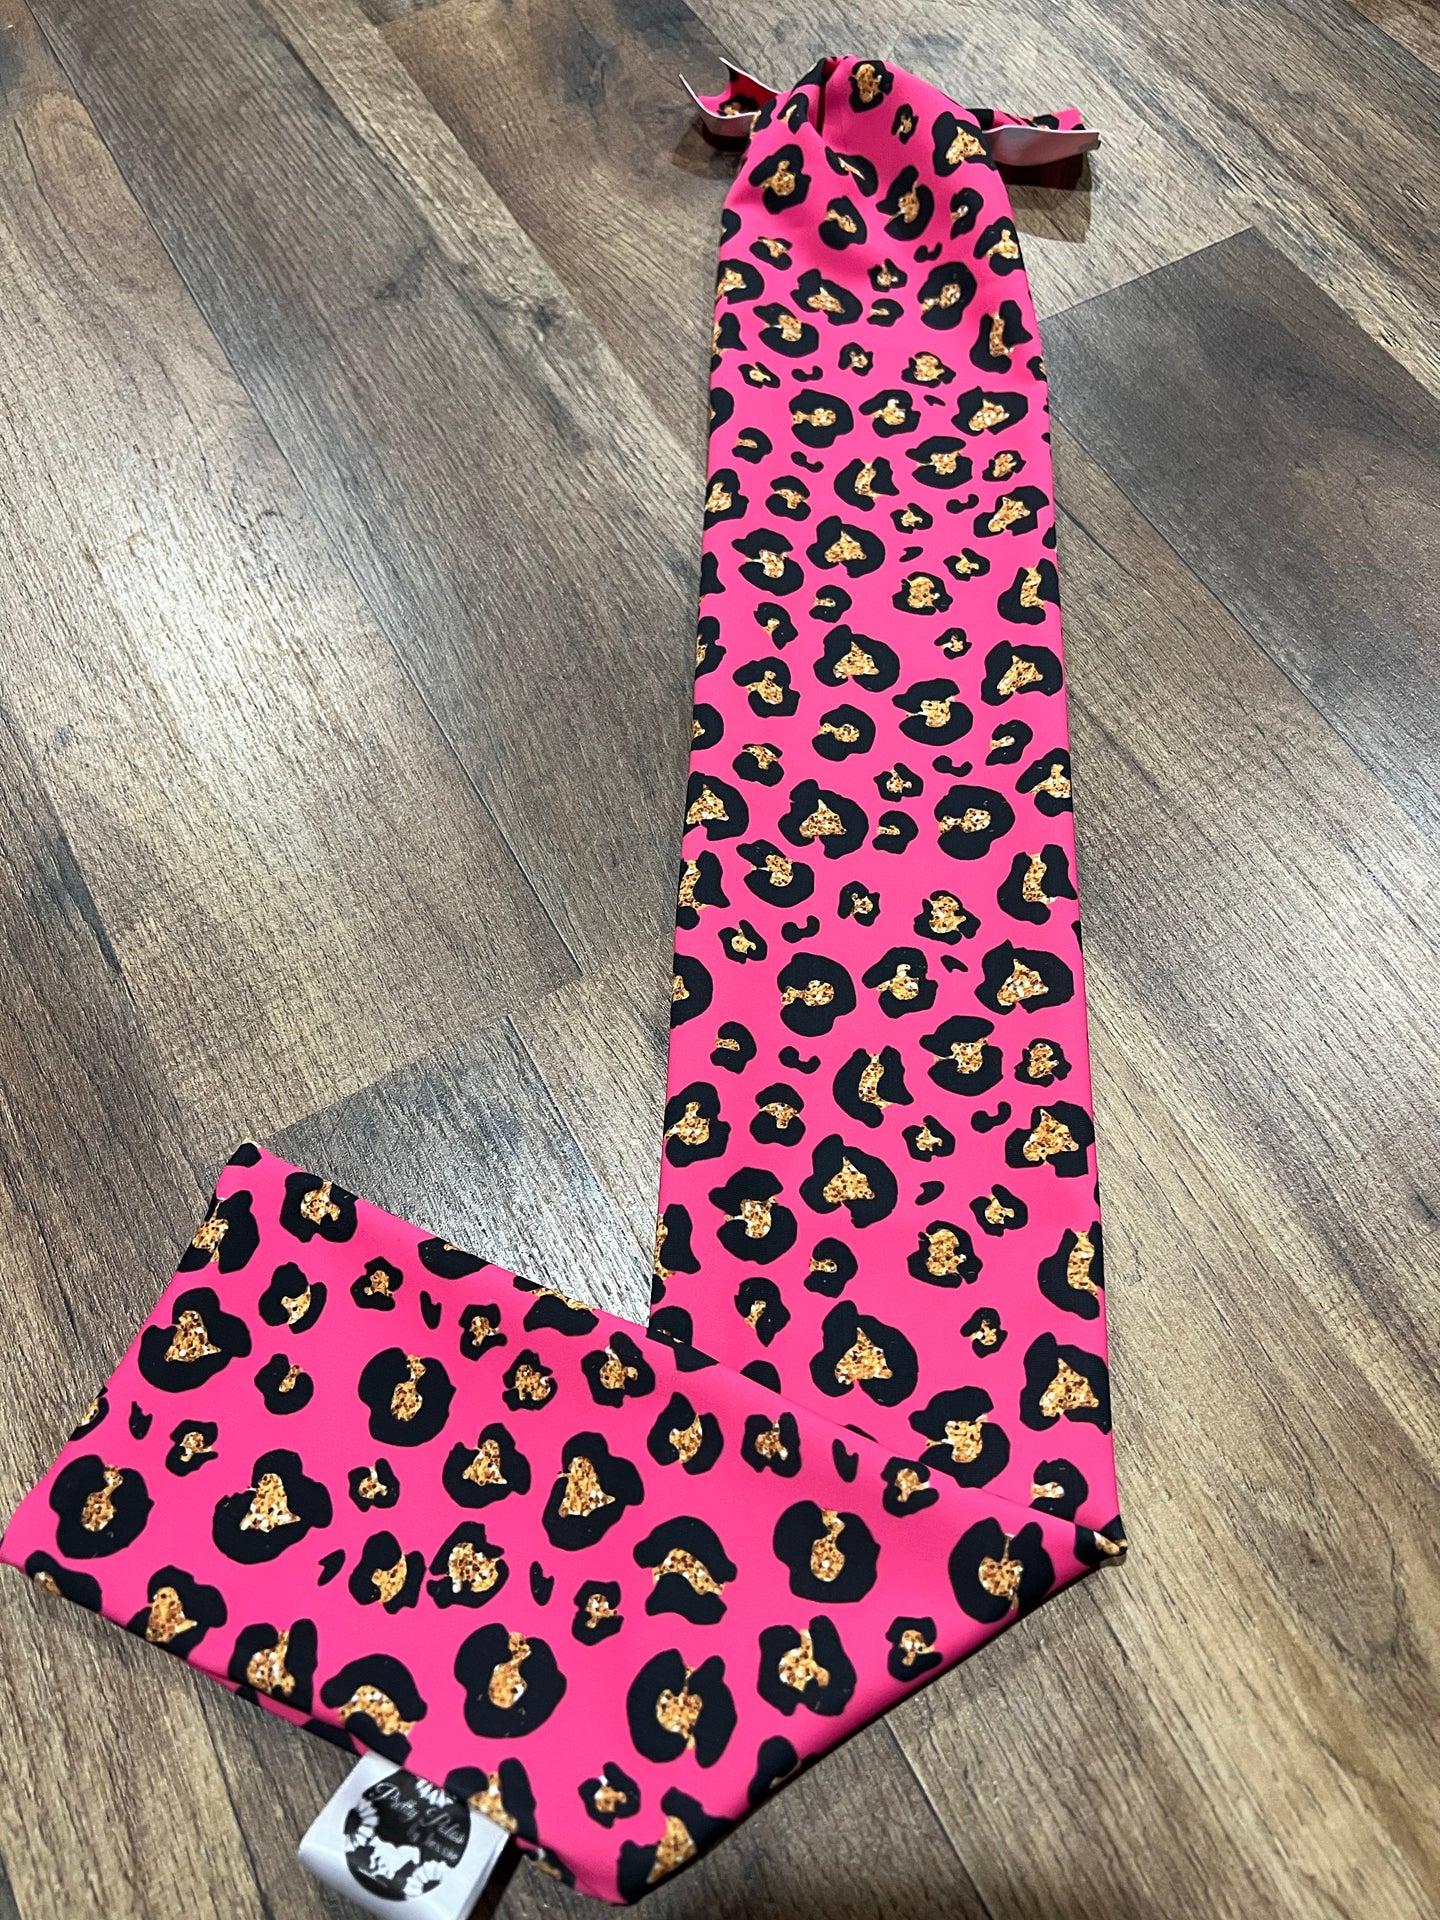 Hot pink cheetah tailbag